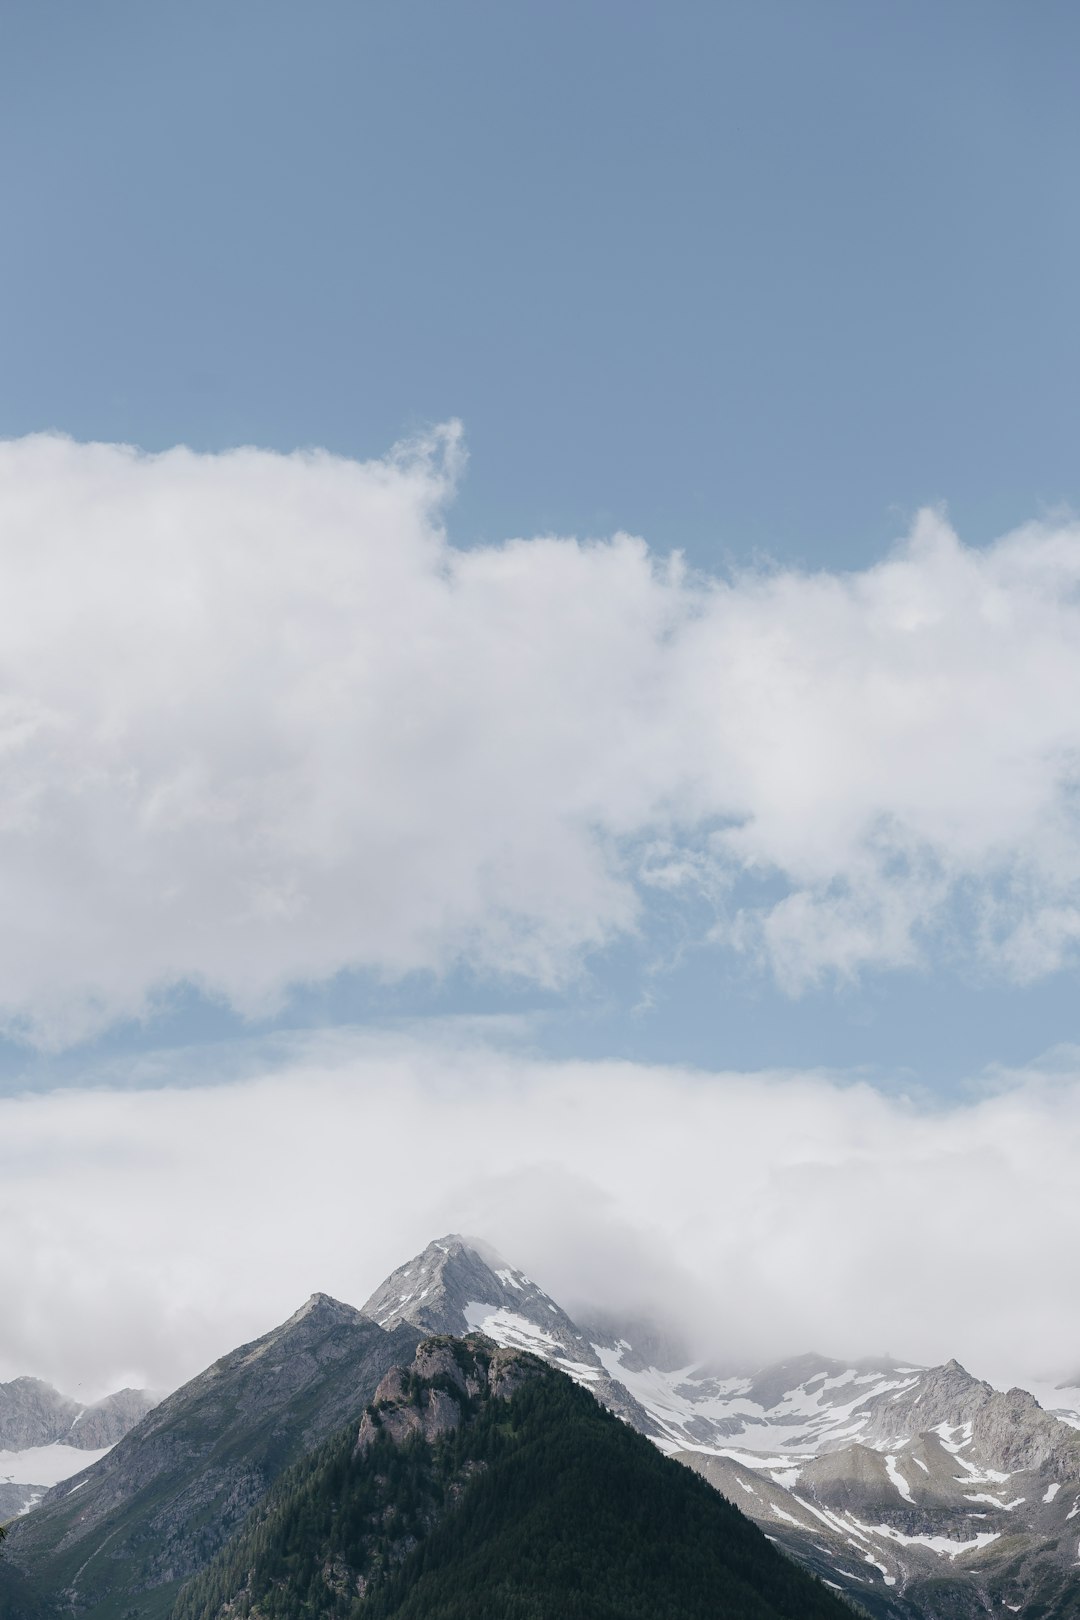 Mountain range photo spot Mount wolf Valle Aurina